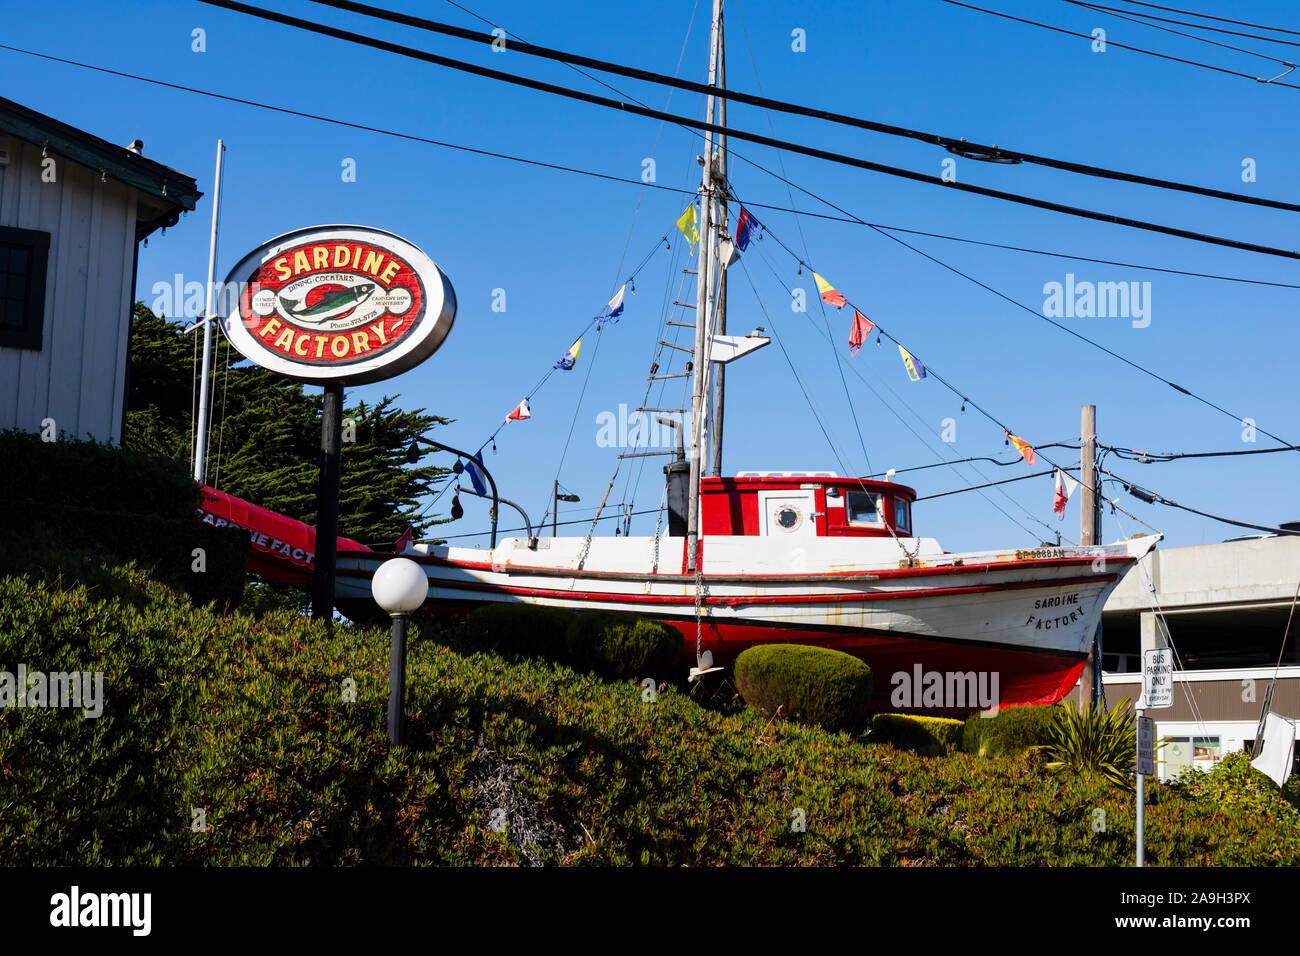 Ancien bateau de pêche à la sardine, la Sardine Factory publicité restaurant et bar. Cannery Row, Monterey, Californie, États-Unis d'Amérique Banque D'Images